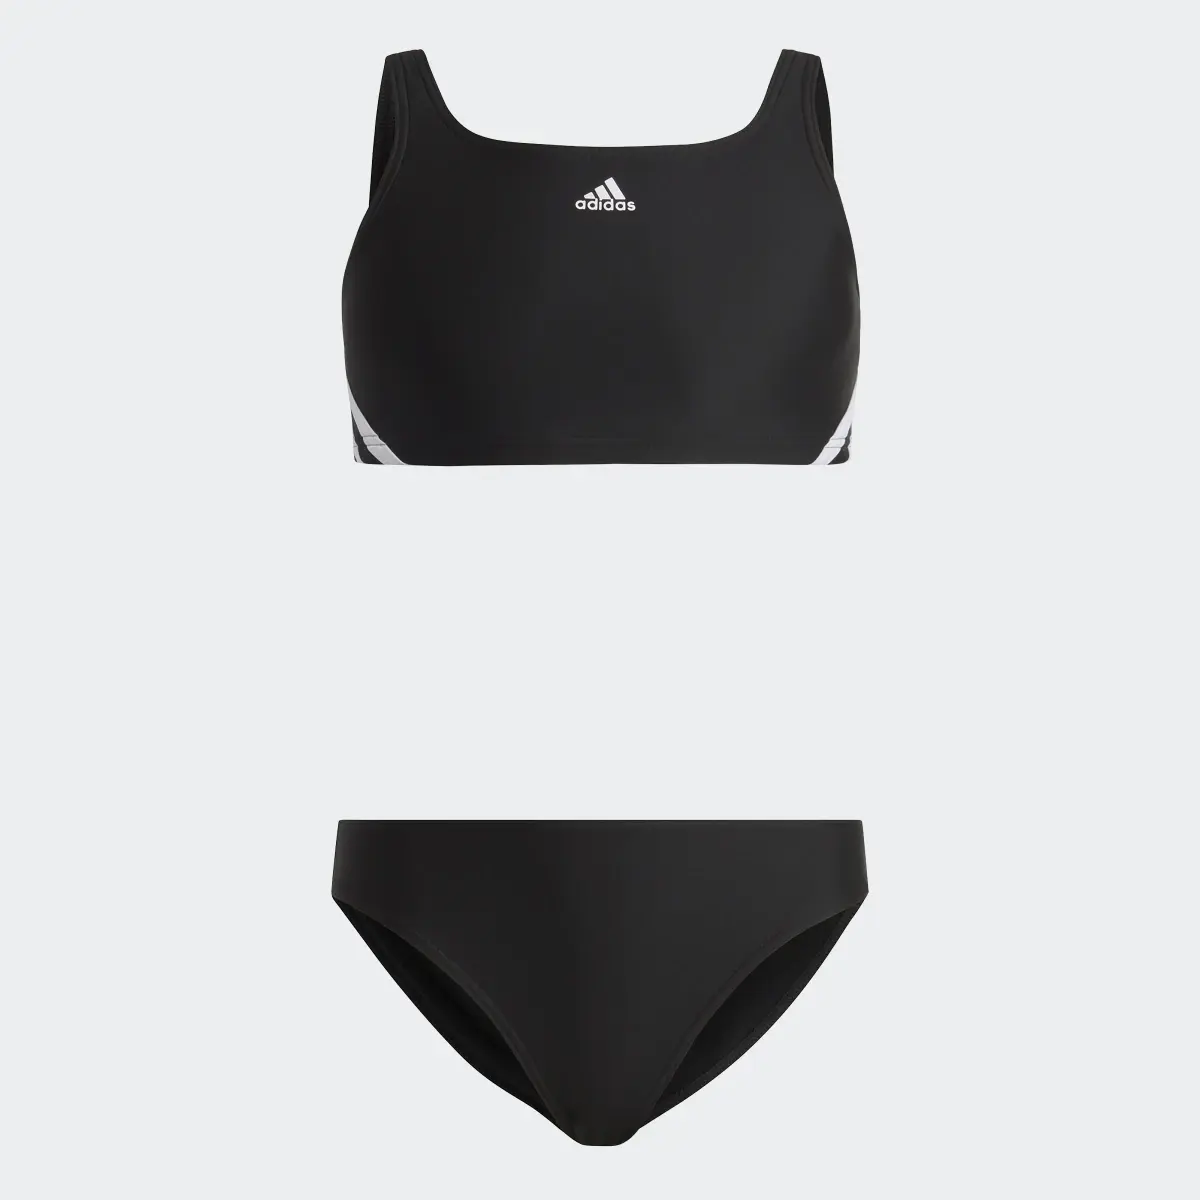 Adidas 3-Streifen Bikini. 1